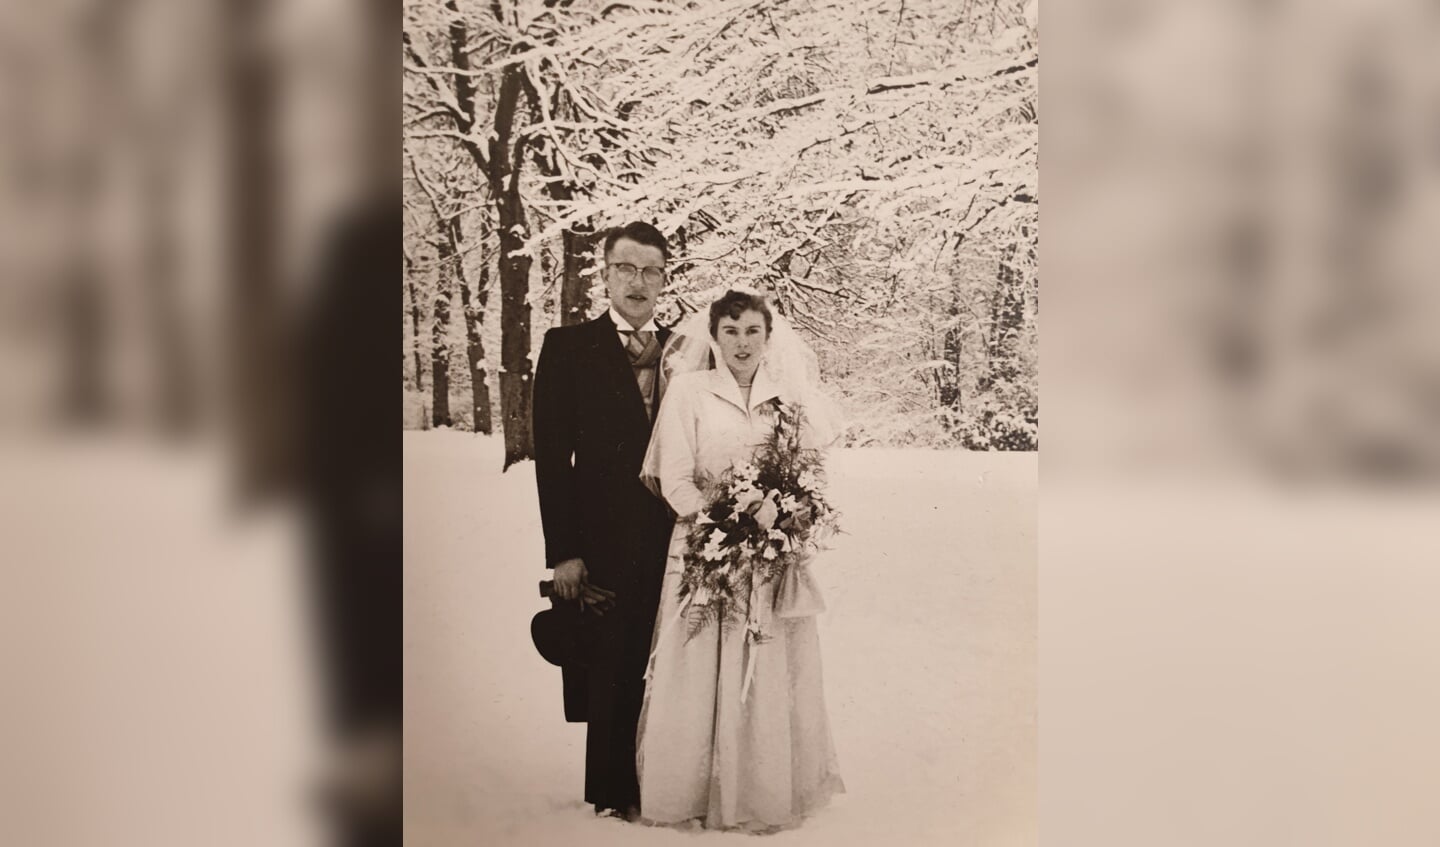 Het echtpaar trouwde in '56 in de sneeuw.